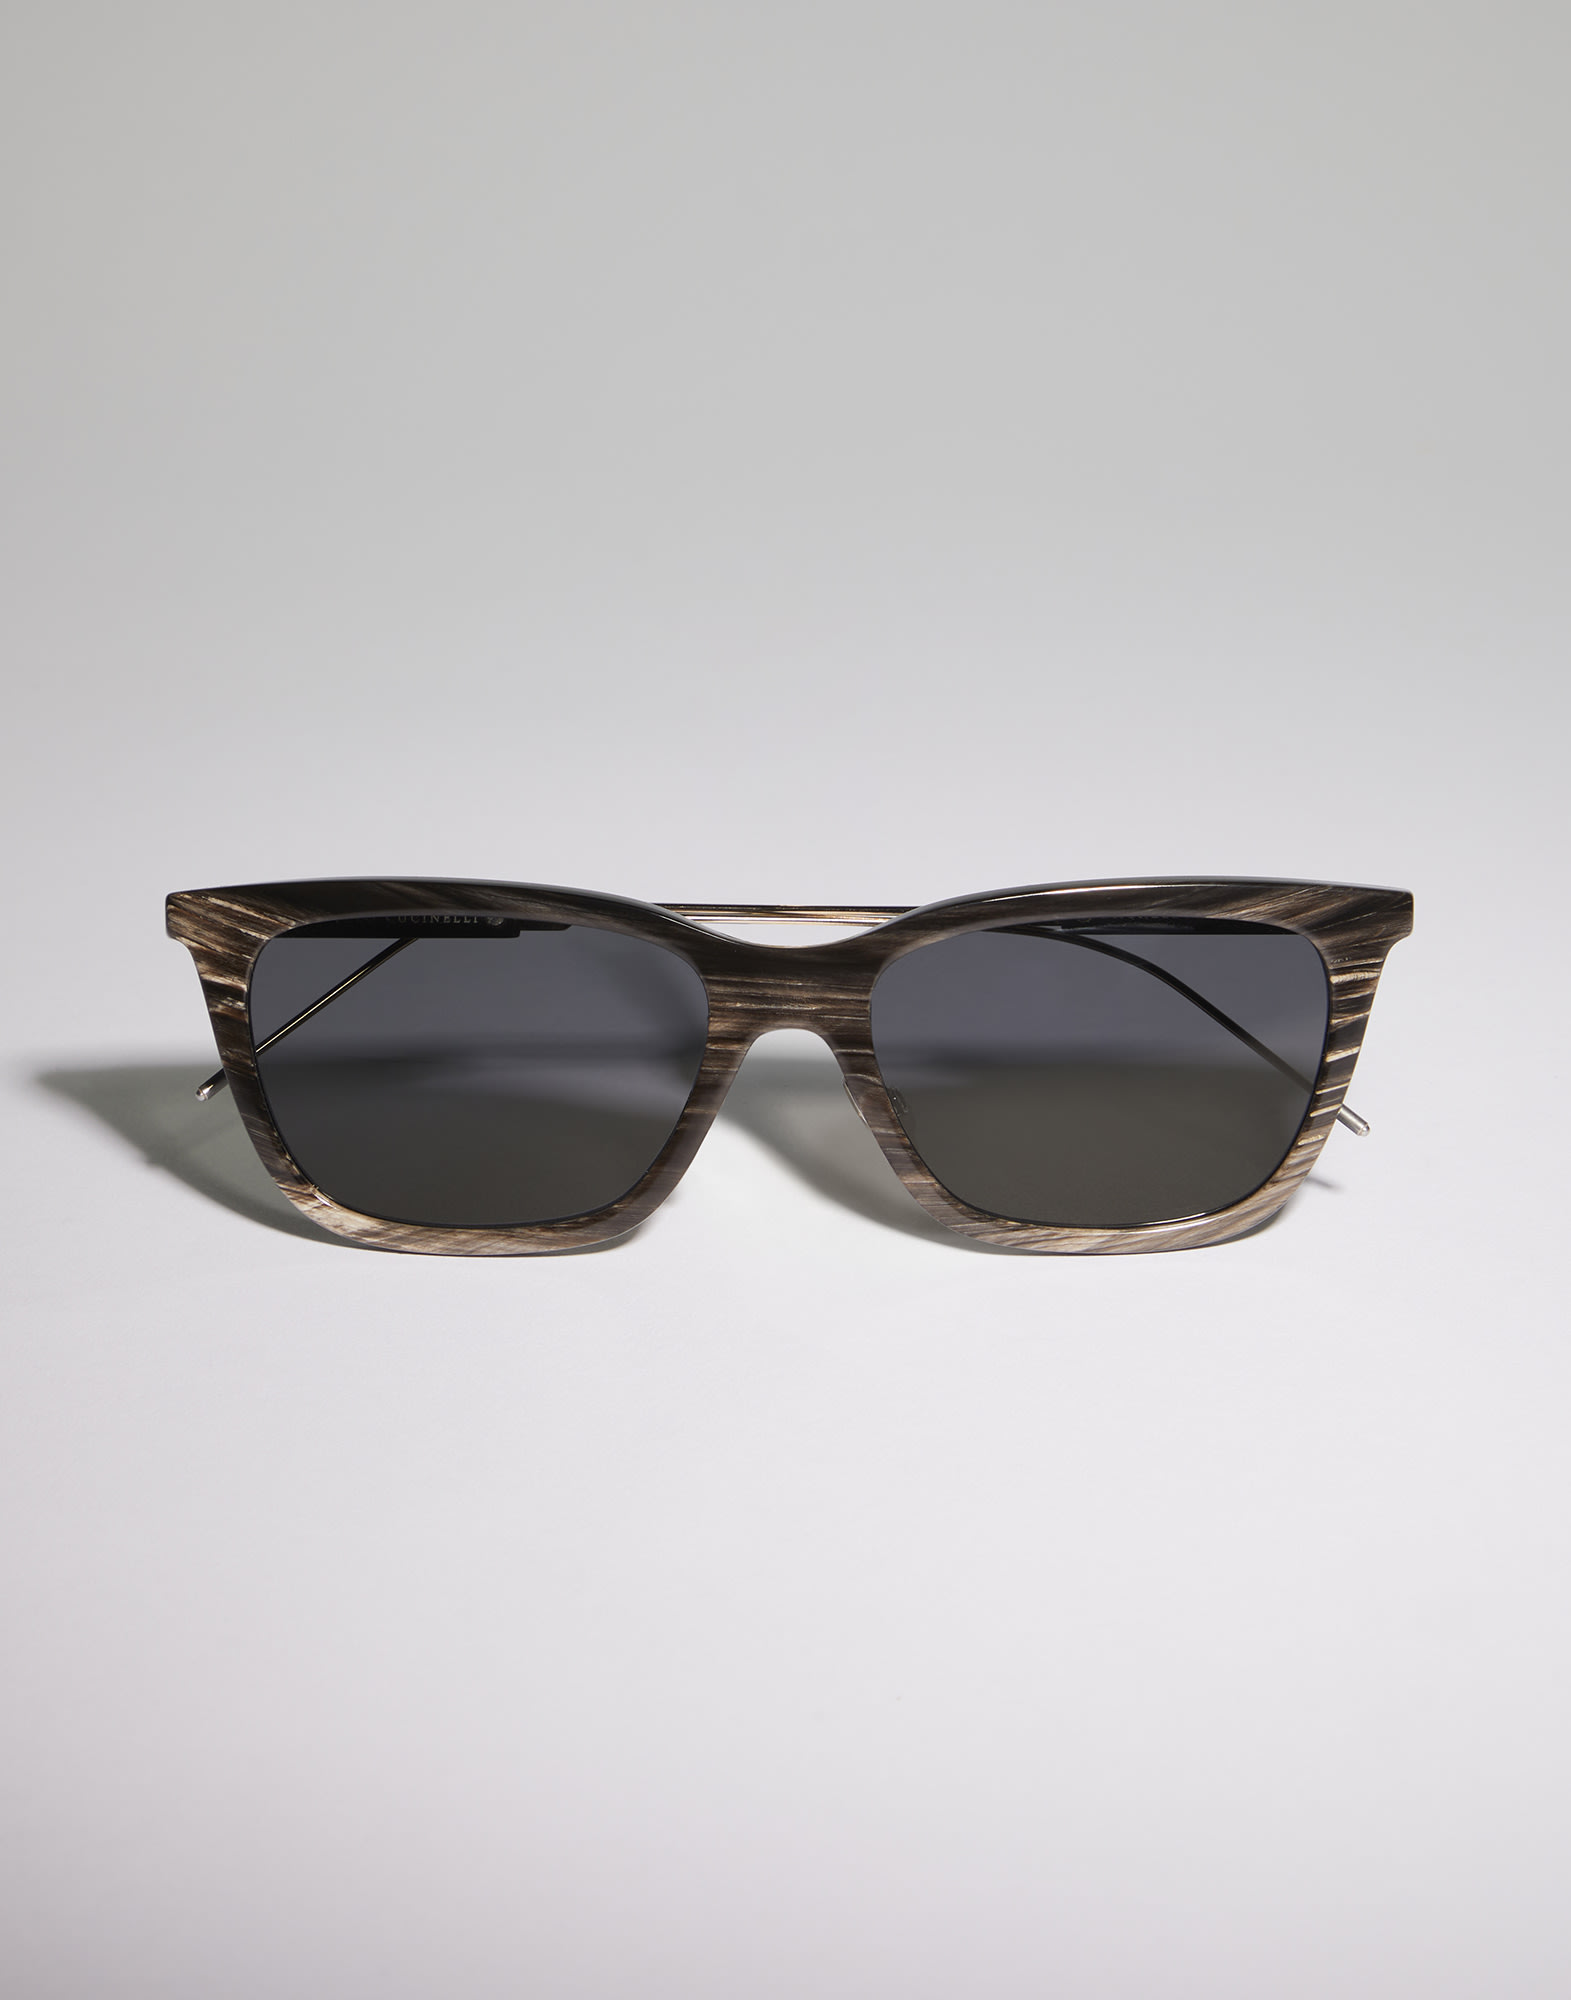 Horn and titanium sunglasses